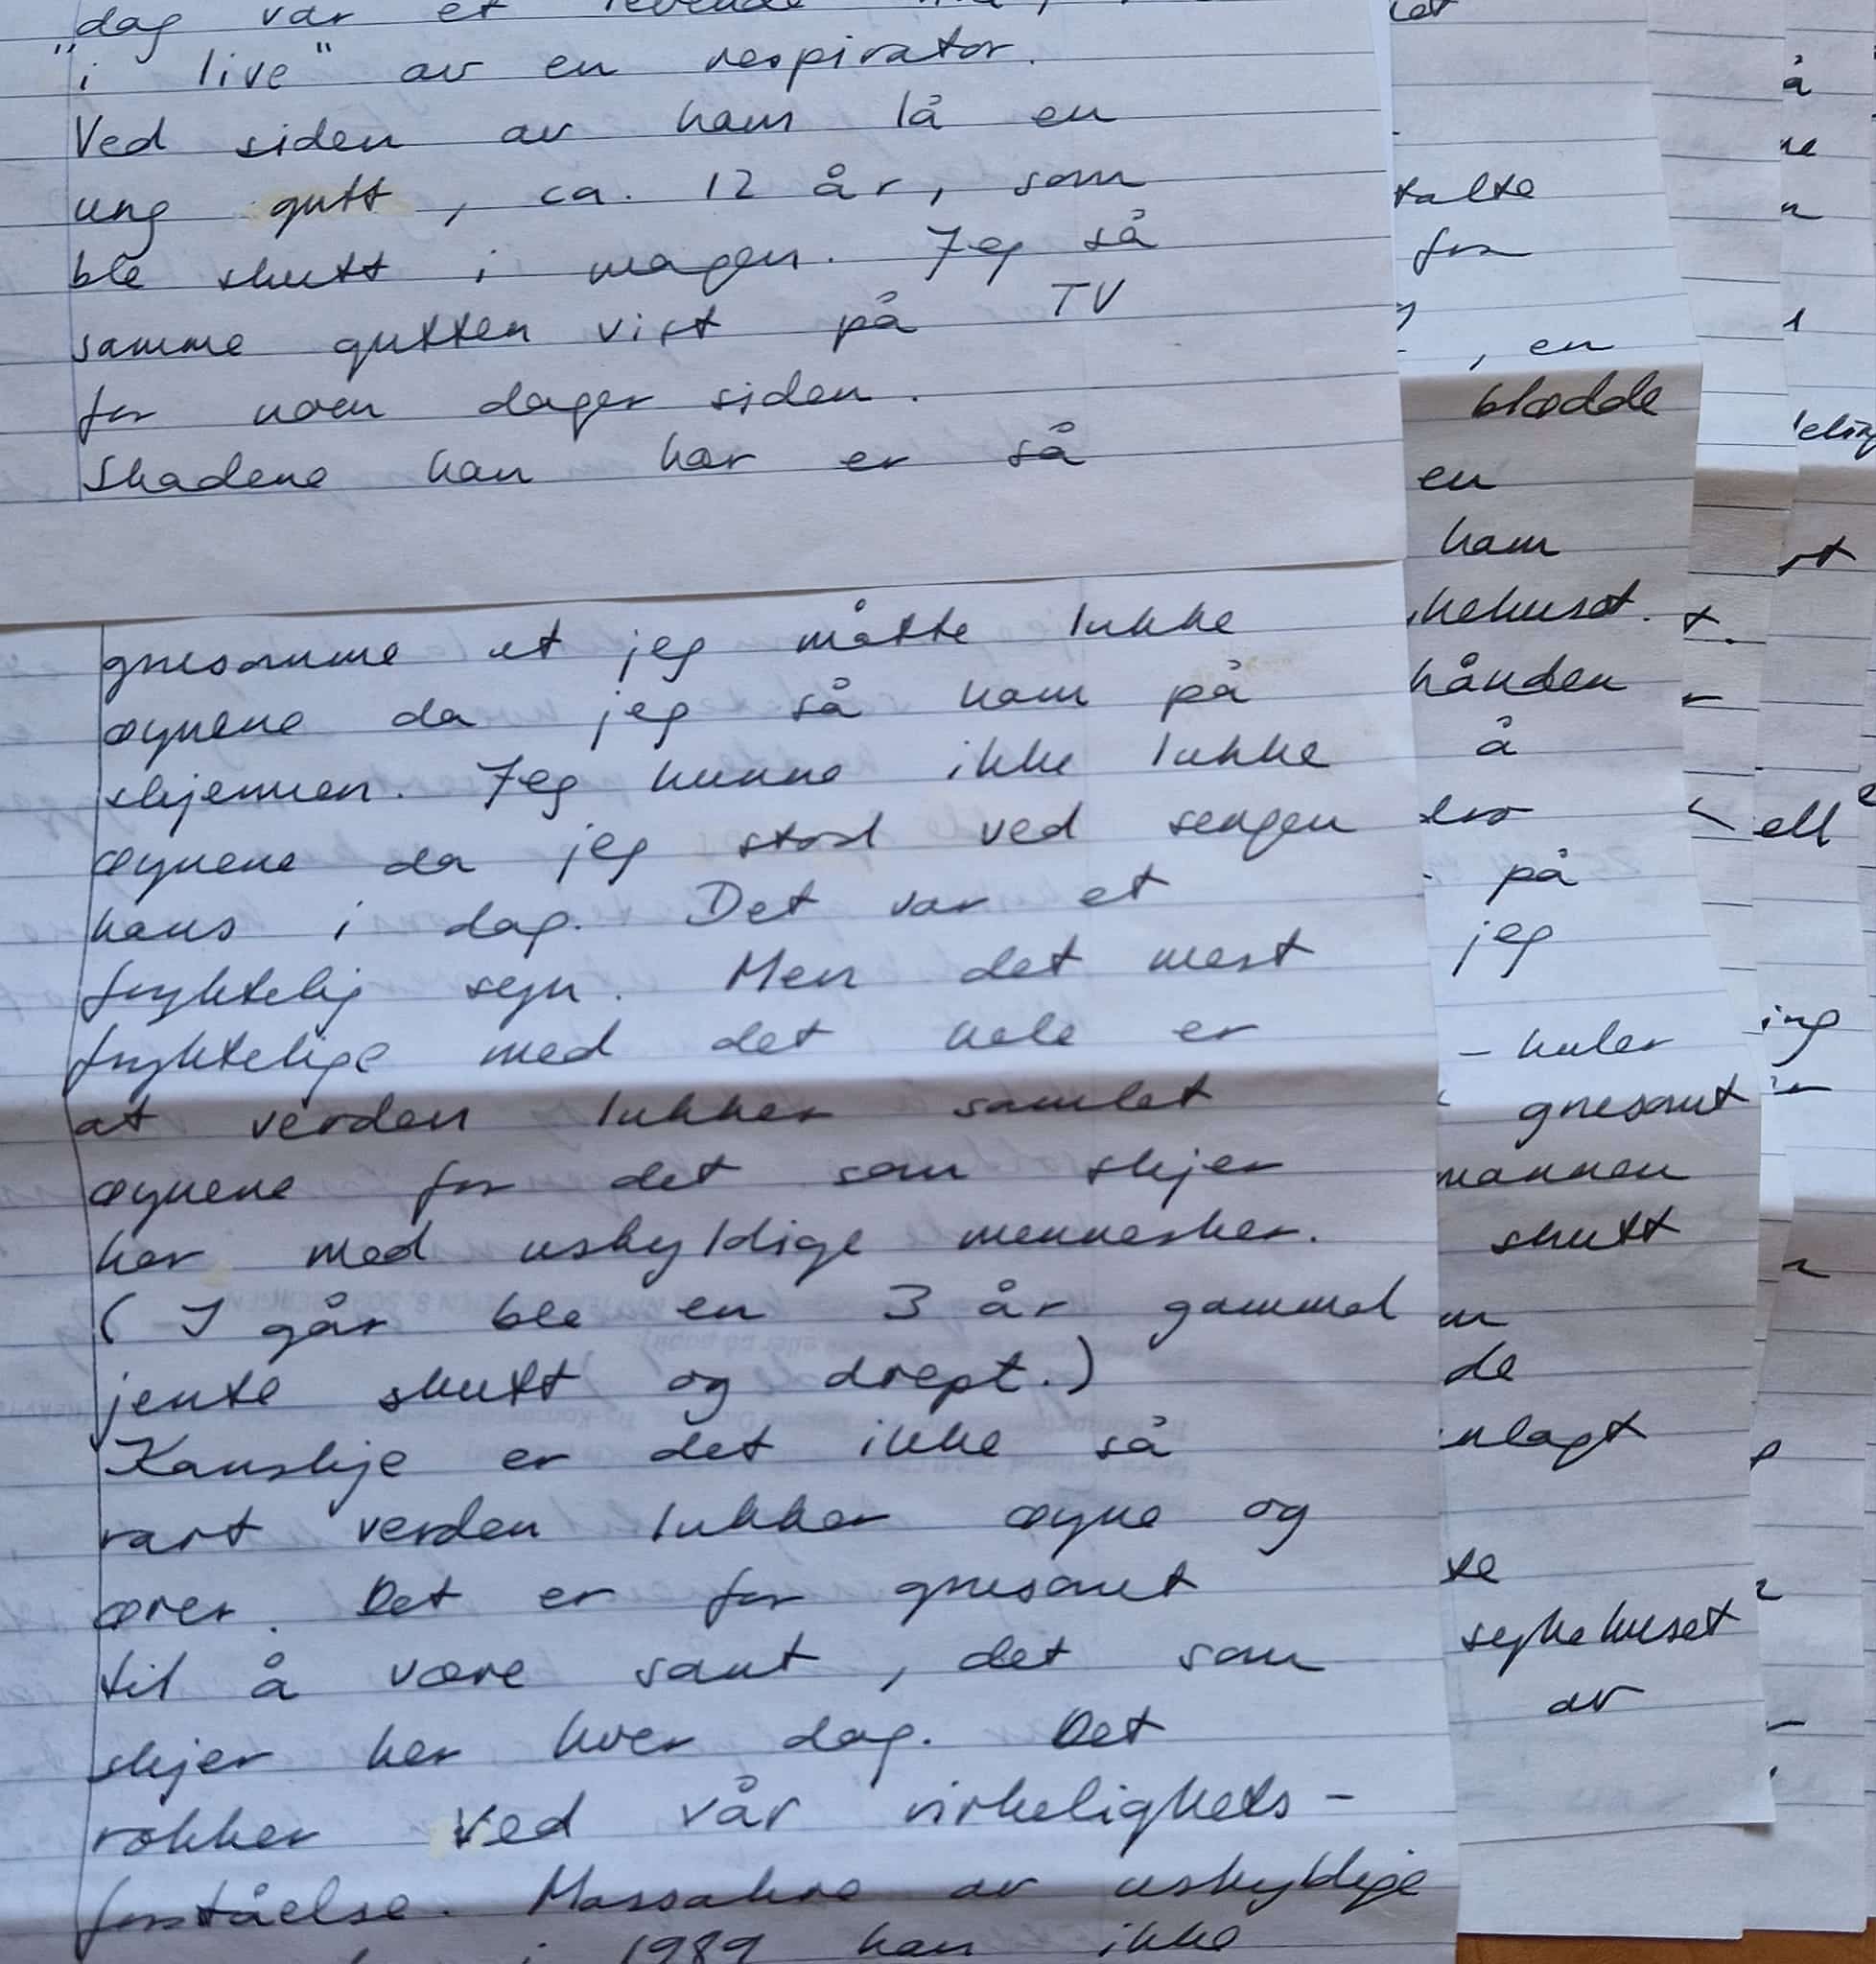 håndskrift 35 år gammelt brev Marit Netland